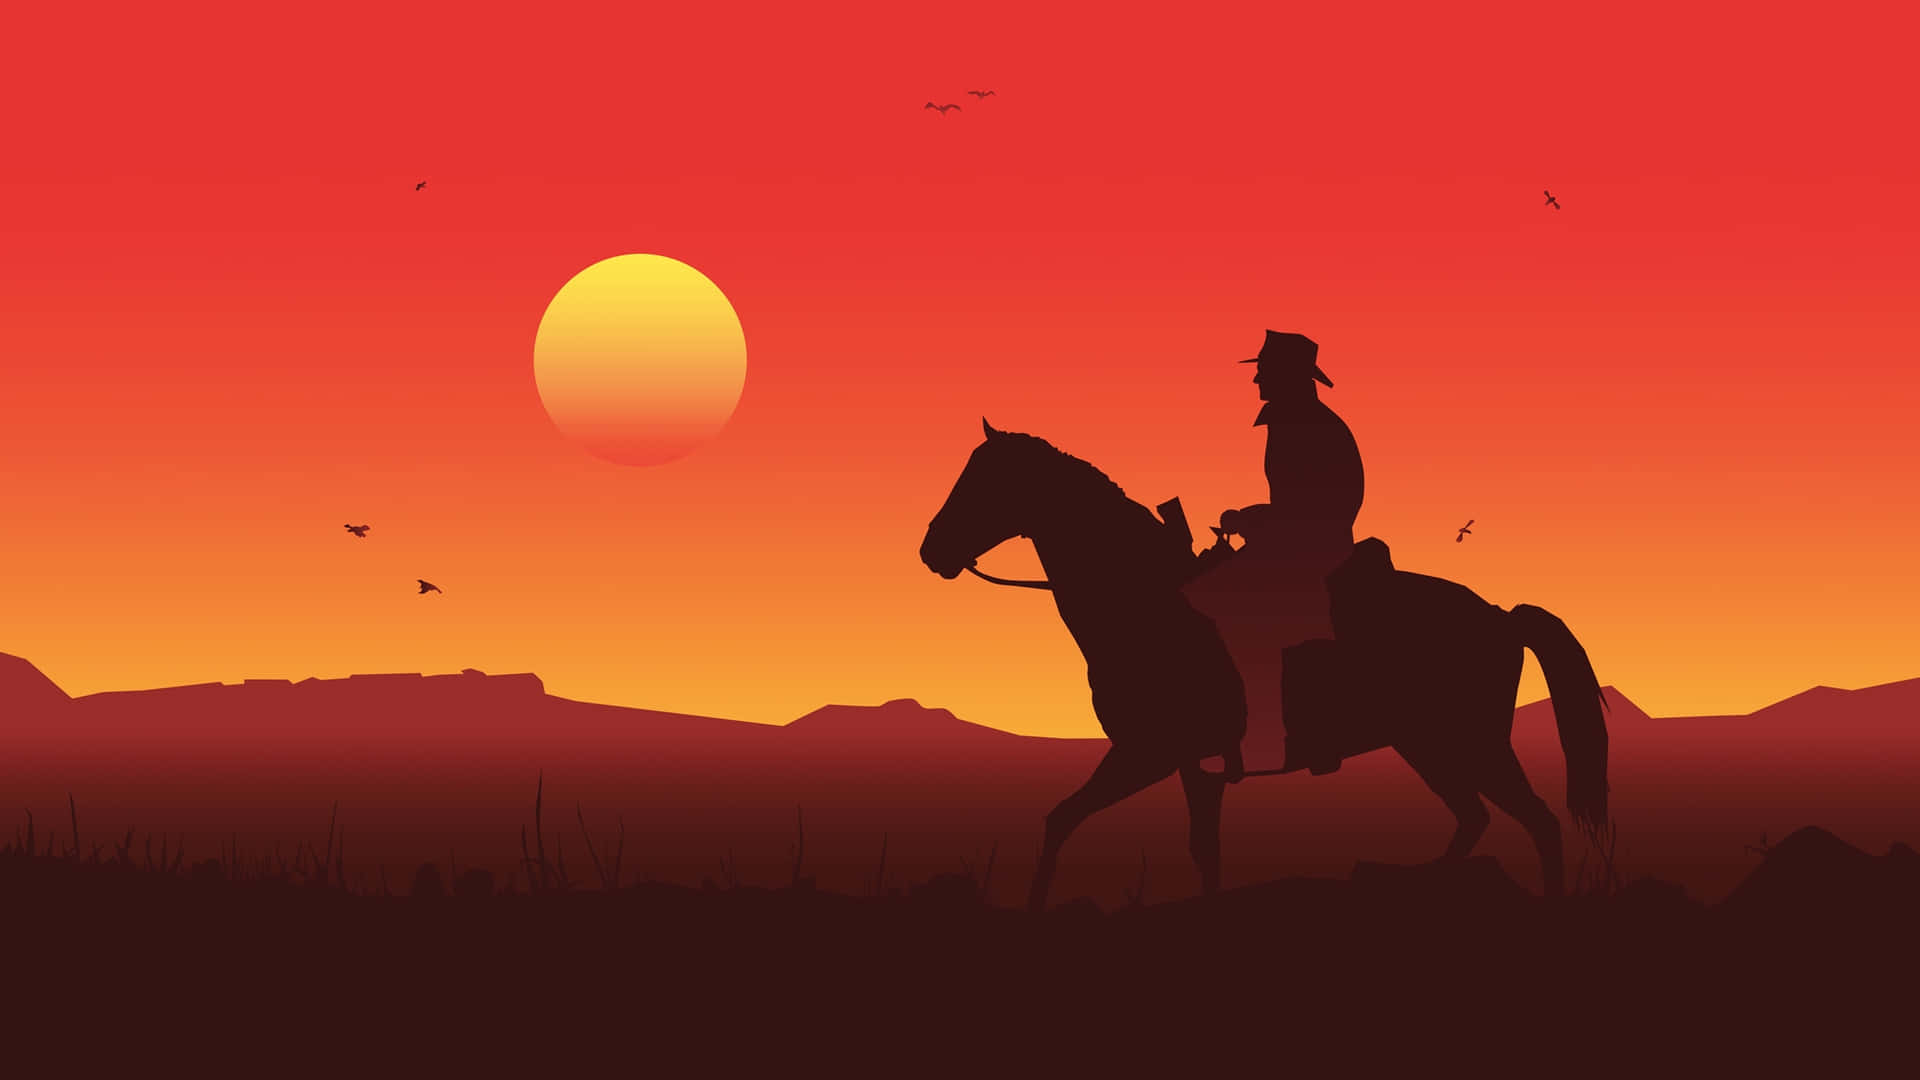 Migliorsfondo Dell'orizzonte Al Tramonto Del Cowboy Di Red Dead Redemption 2.